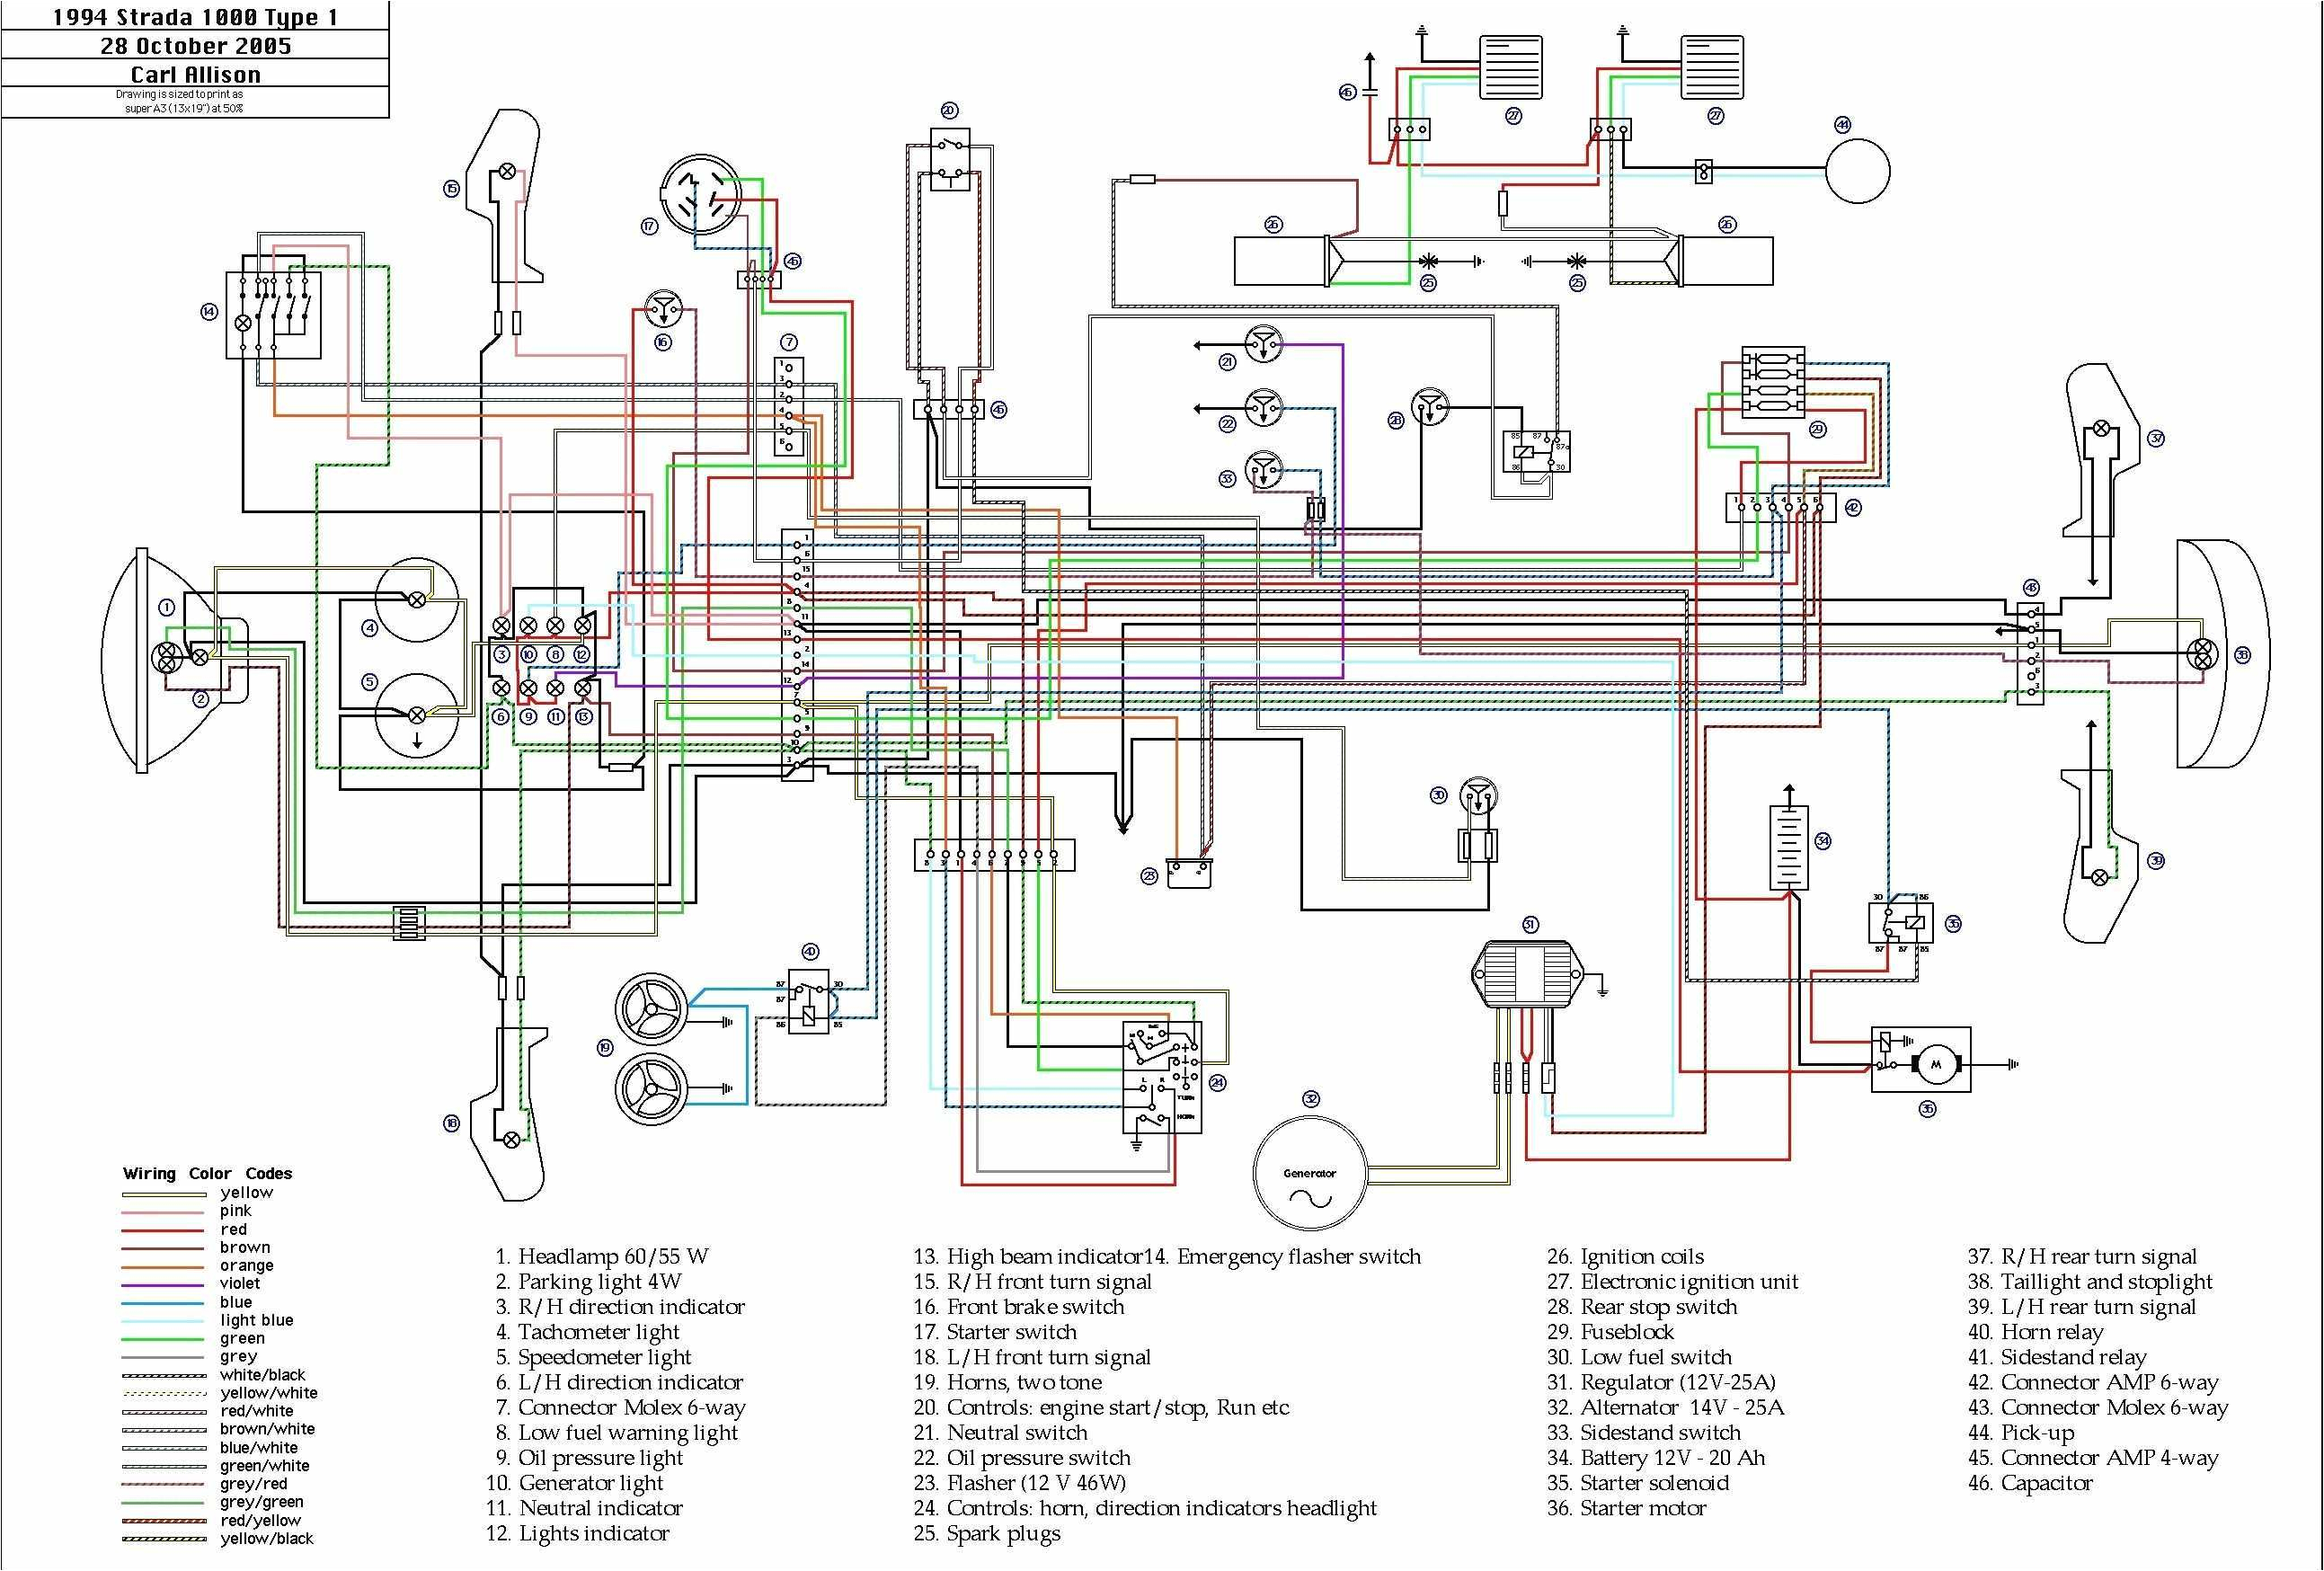 horton hauler wiring diagram wiring diagram megahorton hauler wiring diagram wiring diagram rows horton hauler wiring